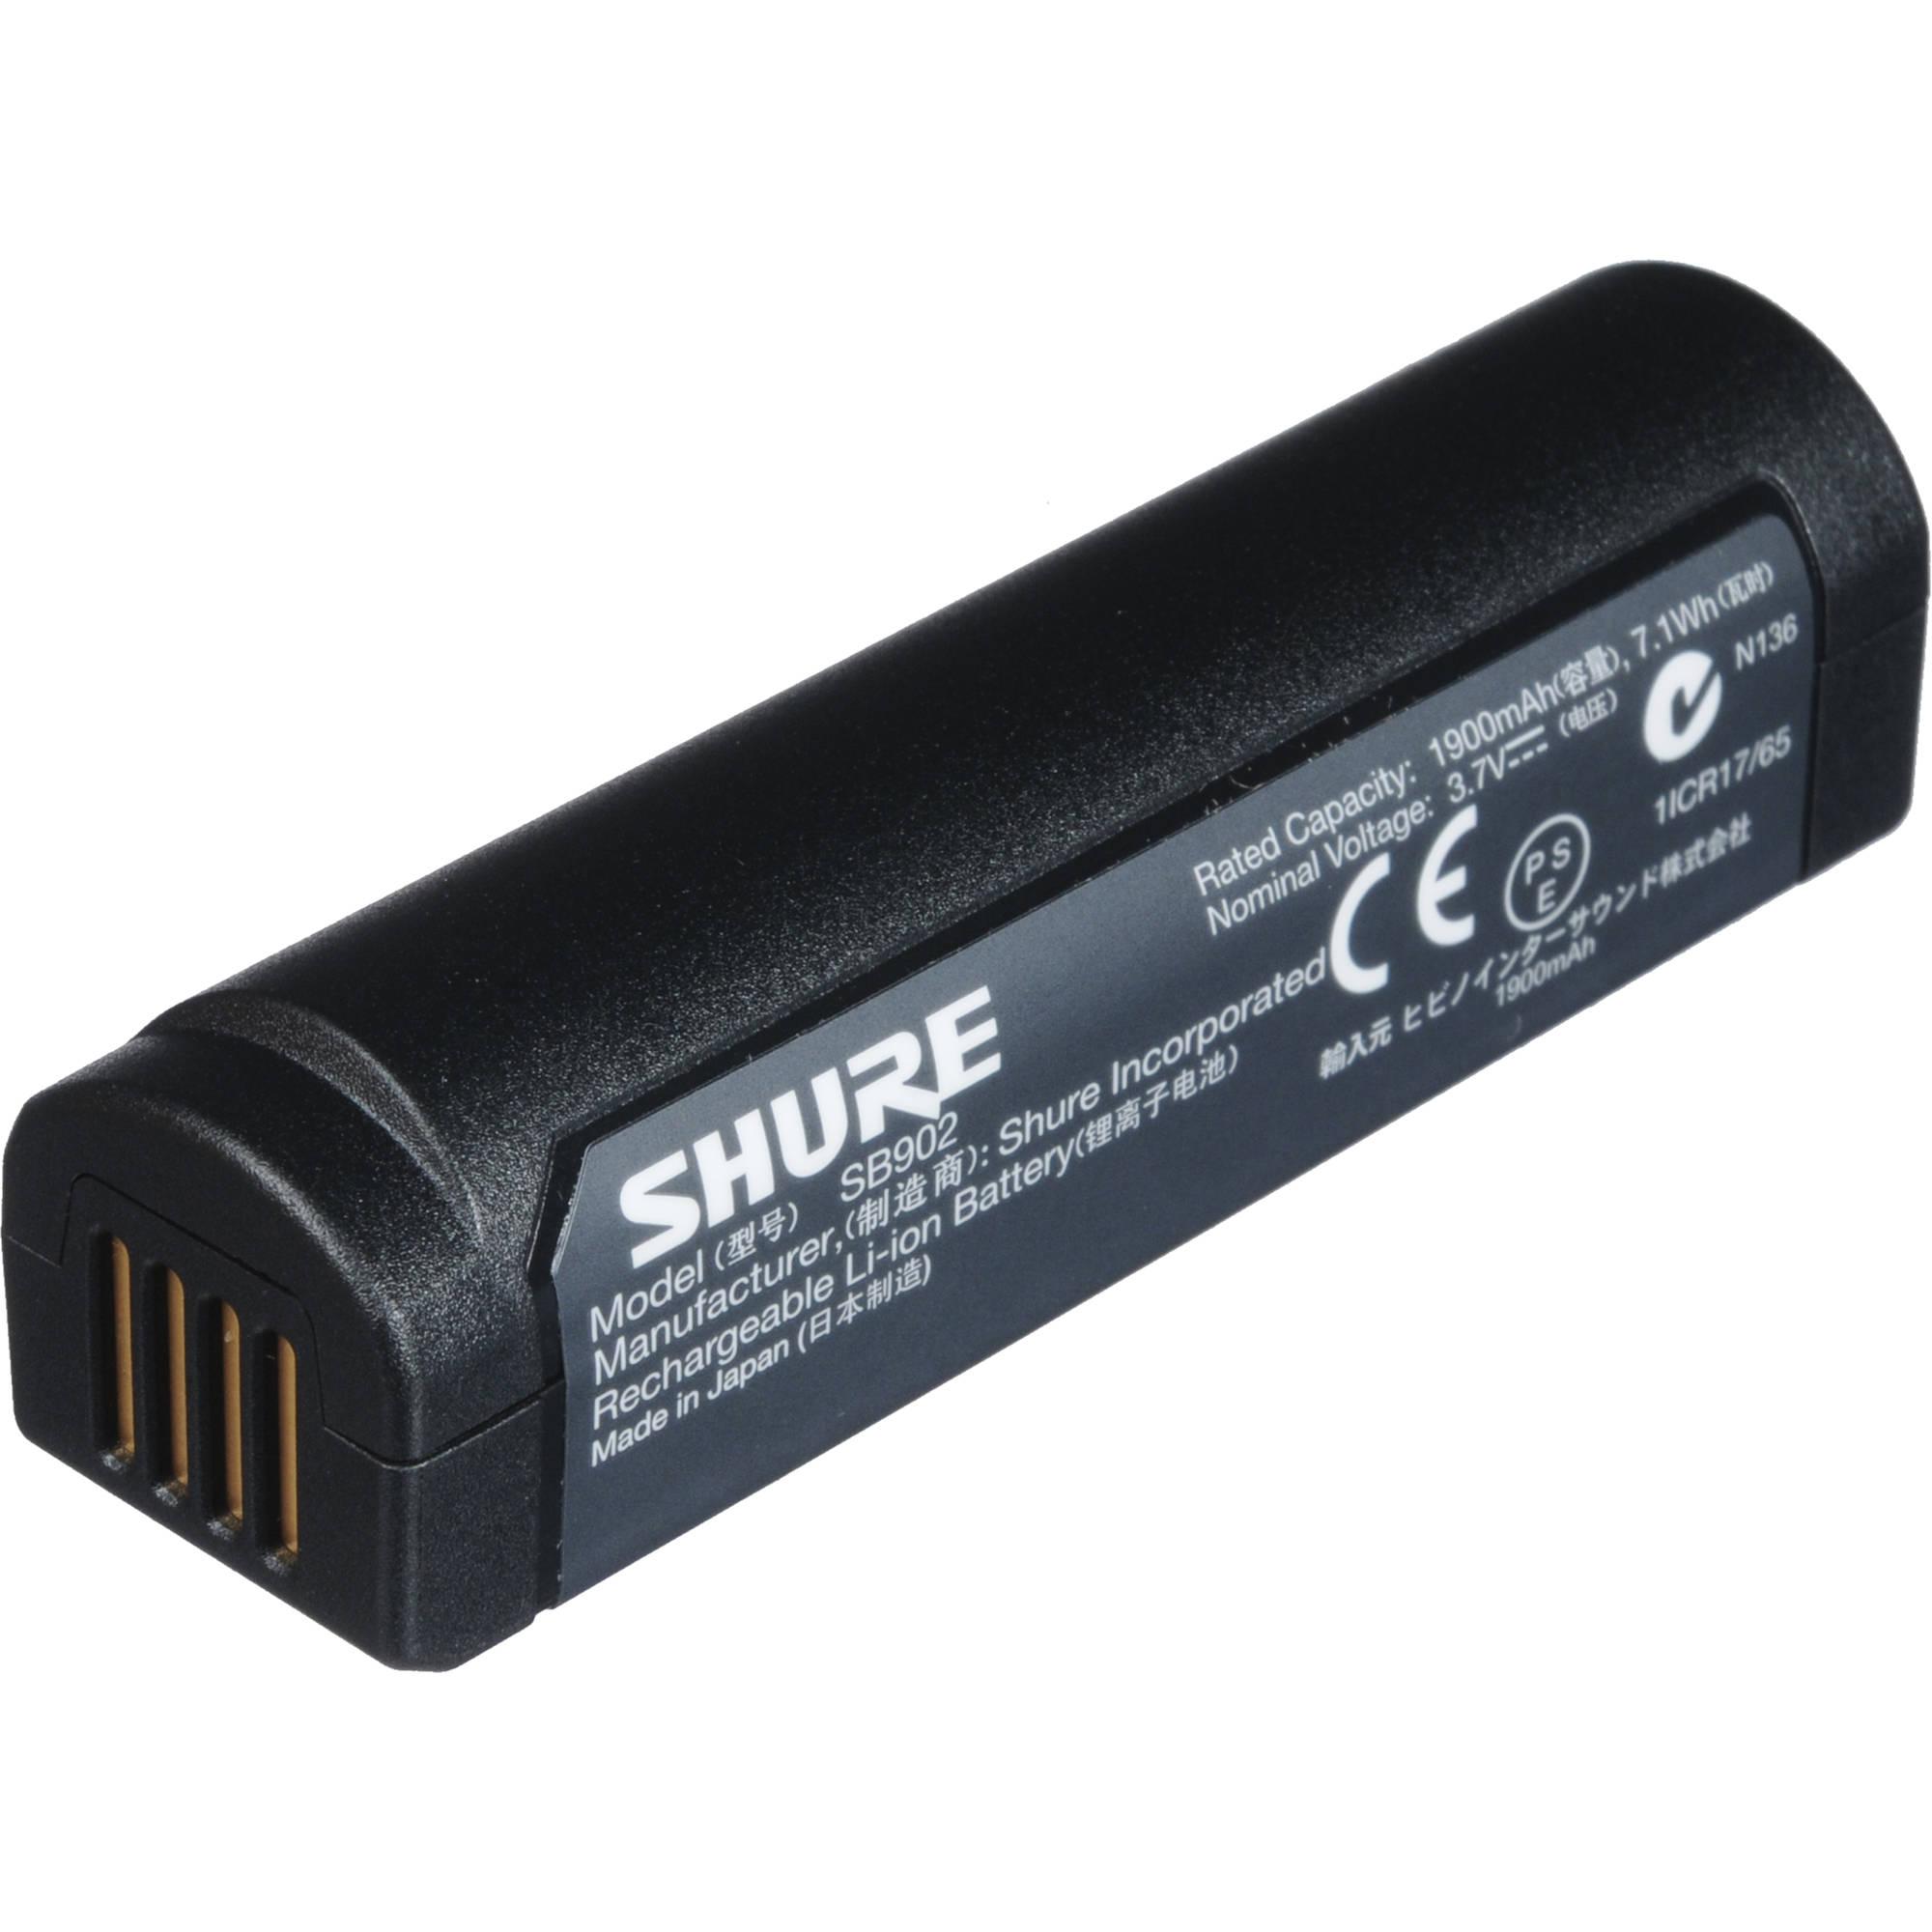 Shure - Batería Ion de Litio Mod.SB902_6